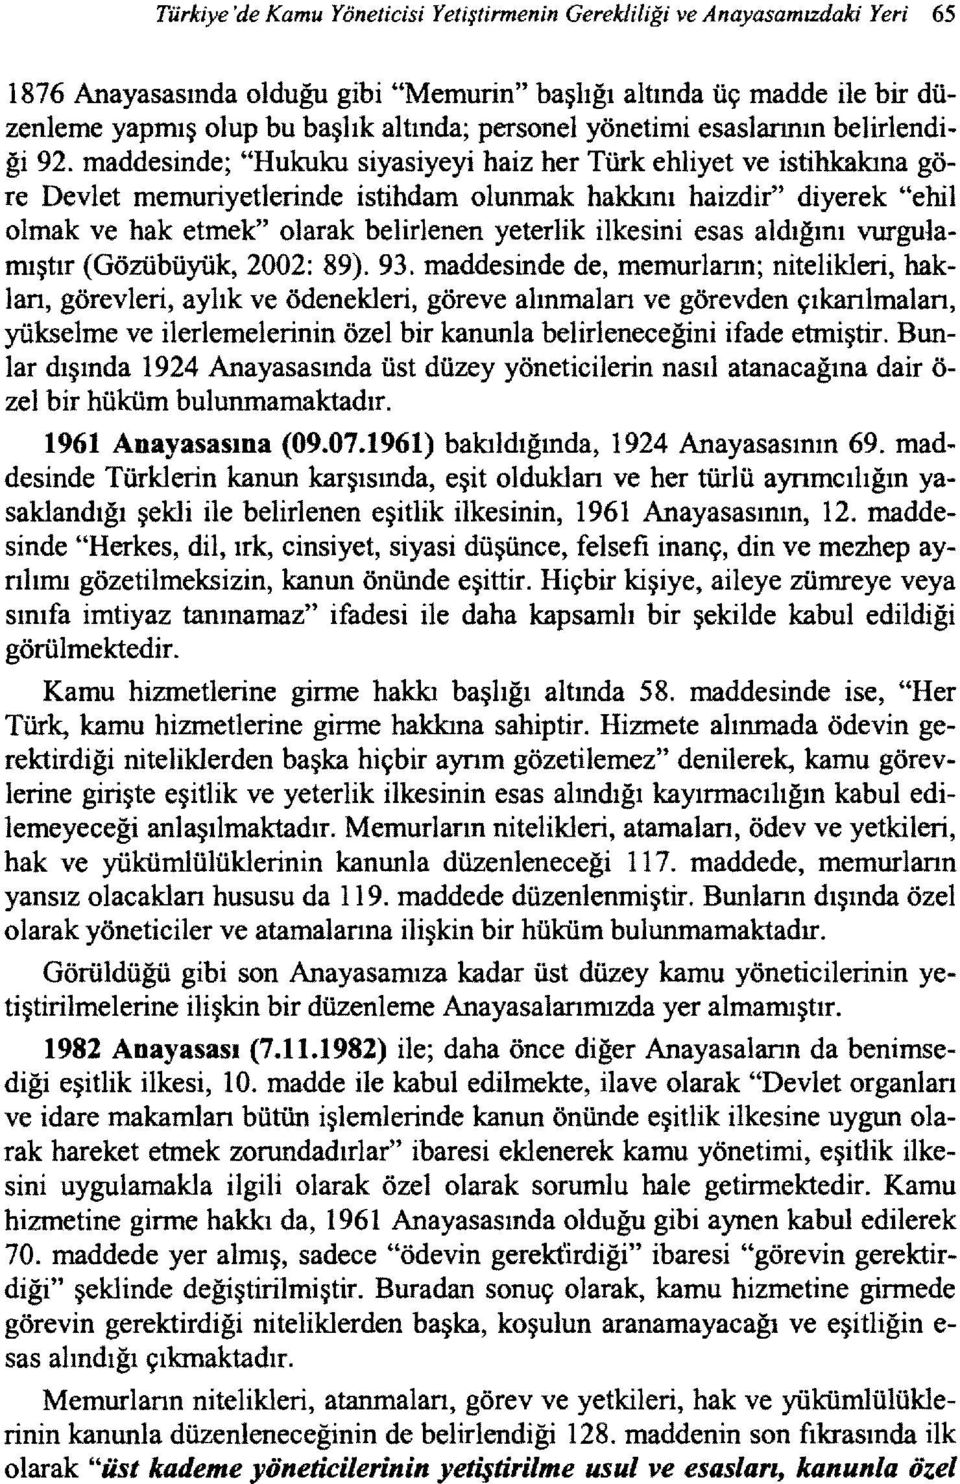 maddesinde; "Hukuku siyasiyeyi haiz her Türk ehliyet ve istihkakına göre Devlet memuriyetlerinde istihdam olunmak hakkını haizdir" diyerek "ebil olmak ve hak etmek" olarak belirlenen yeterlik